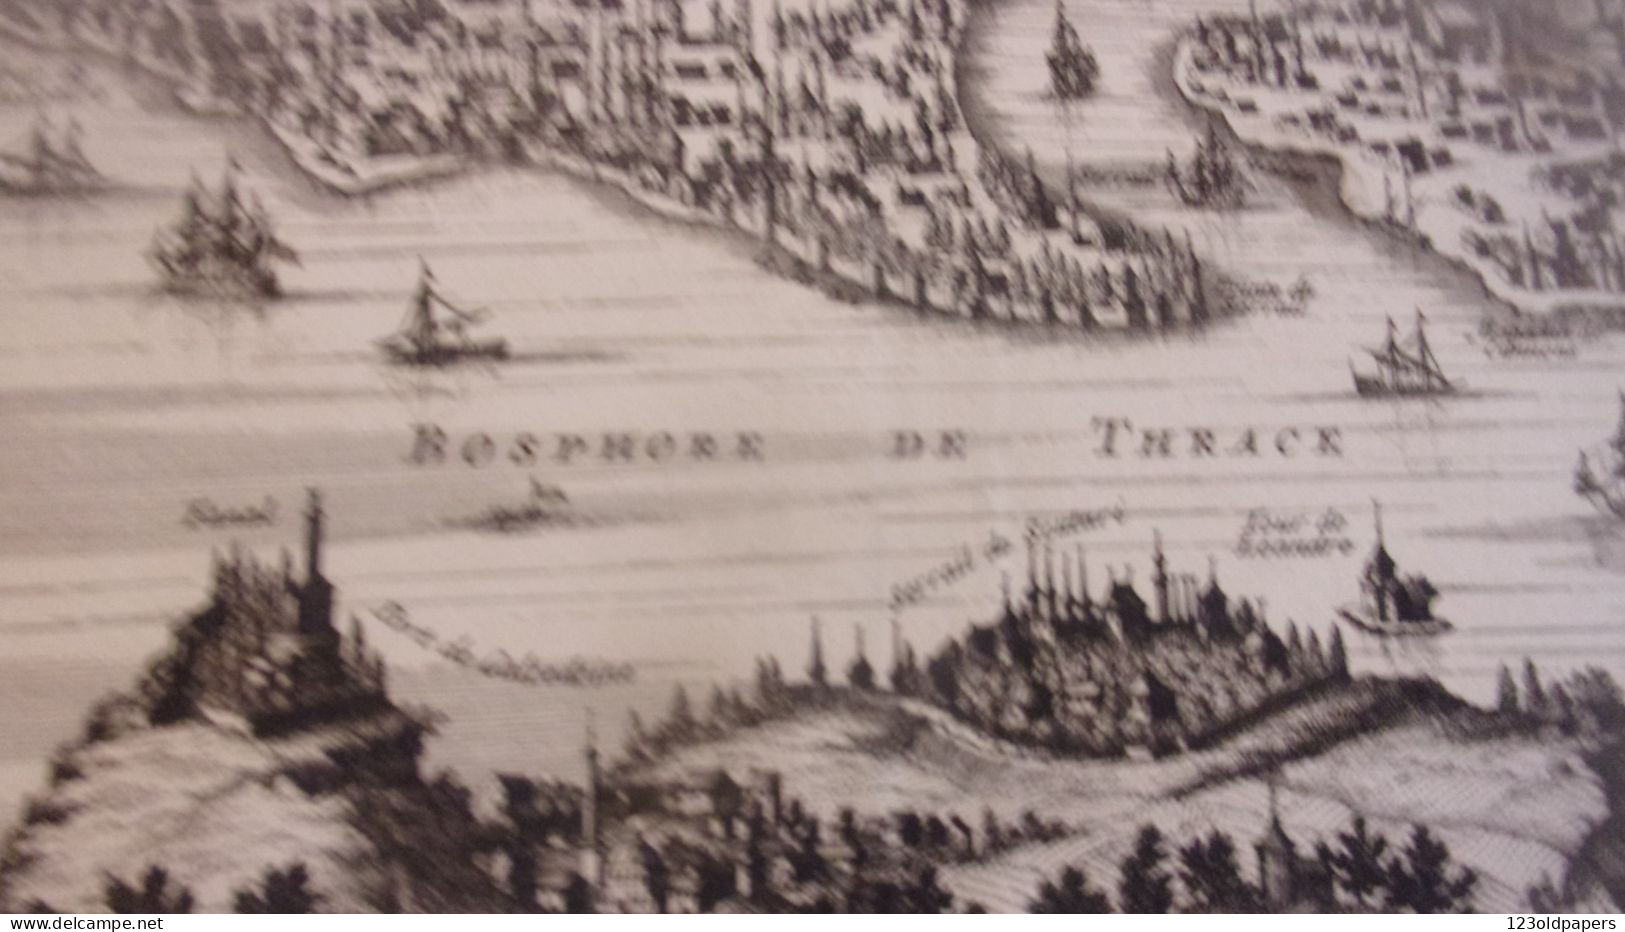 ORIGINALE 1719 PAR Zacharias Châtelain Bosphore de THRACE VUE DE CONSTANTINOPLE DU COTE BOSPHORE  TURKEY TURQUIE